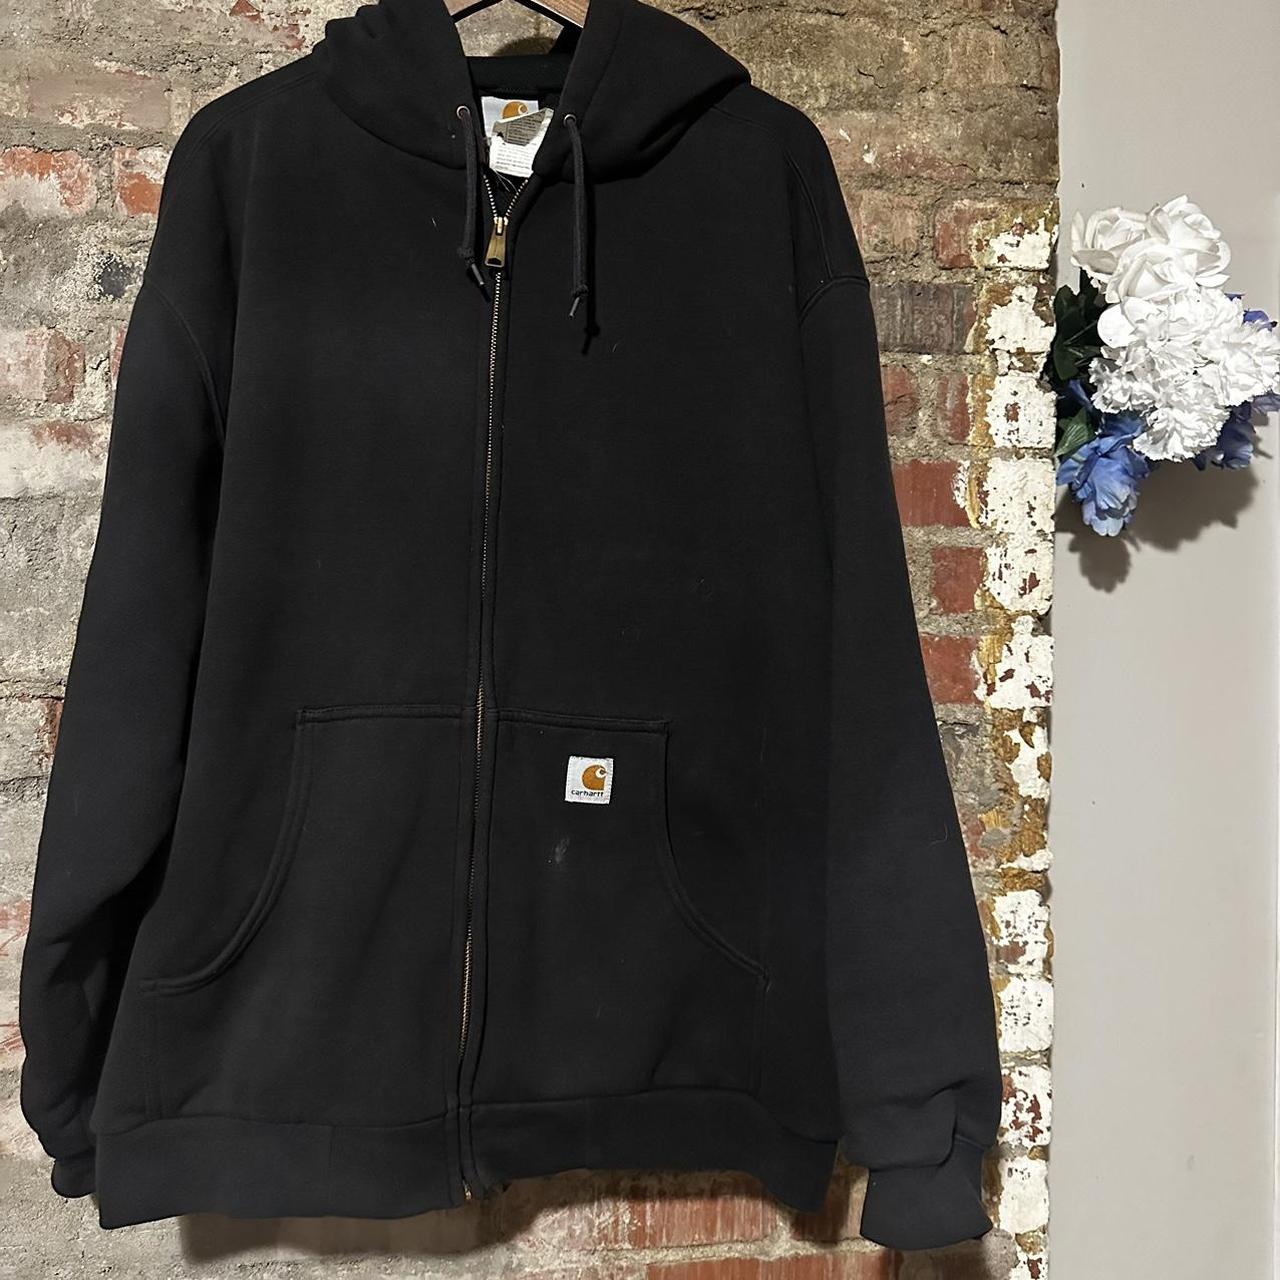 Vintage Carhartt zip up jacket 50 cotton/50... - Depop